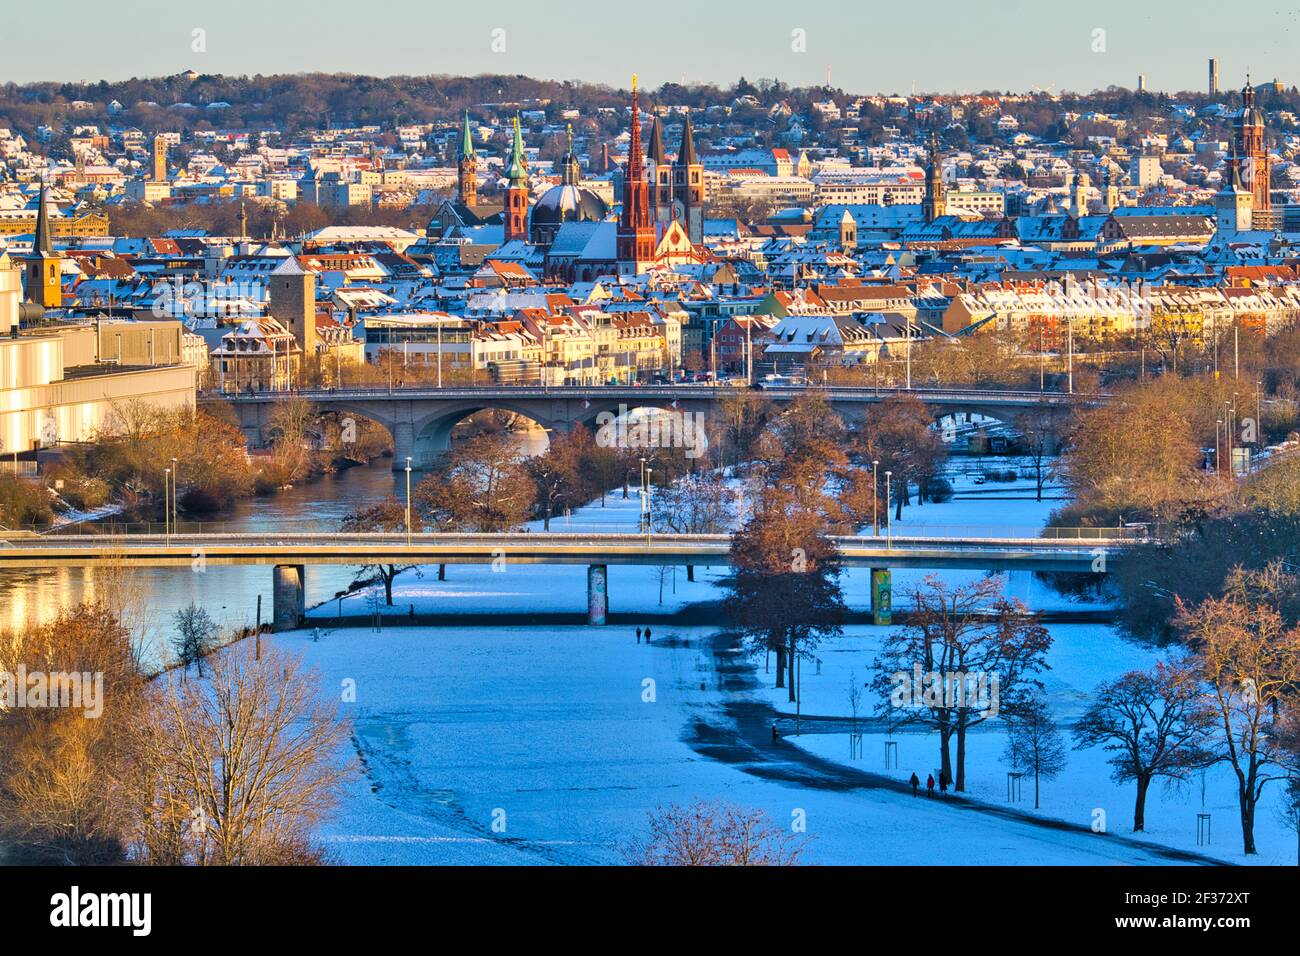 Paysage urbain authentique de l'Allemagne recouvert de neige. Würzburg, une belle ville médiévale à Frankonia, Bavière. Vue aérienne avec rivière, ponts, églises, ville Banque D'Images